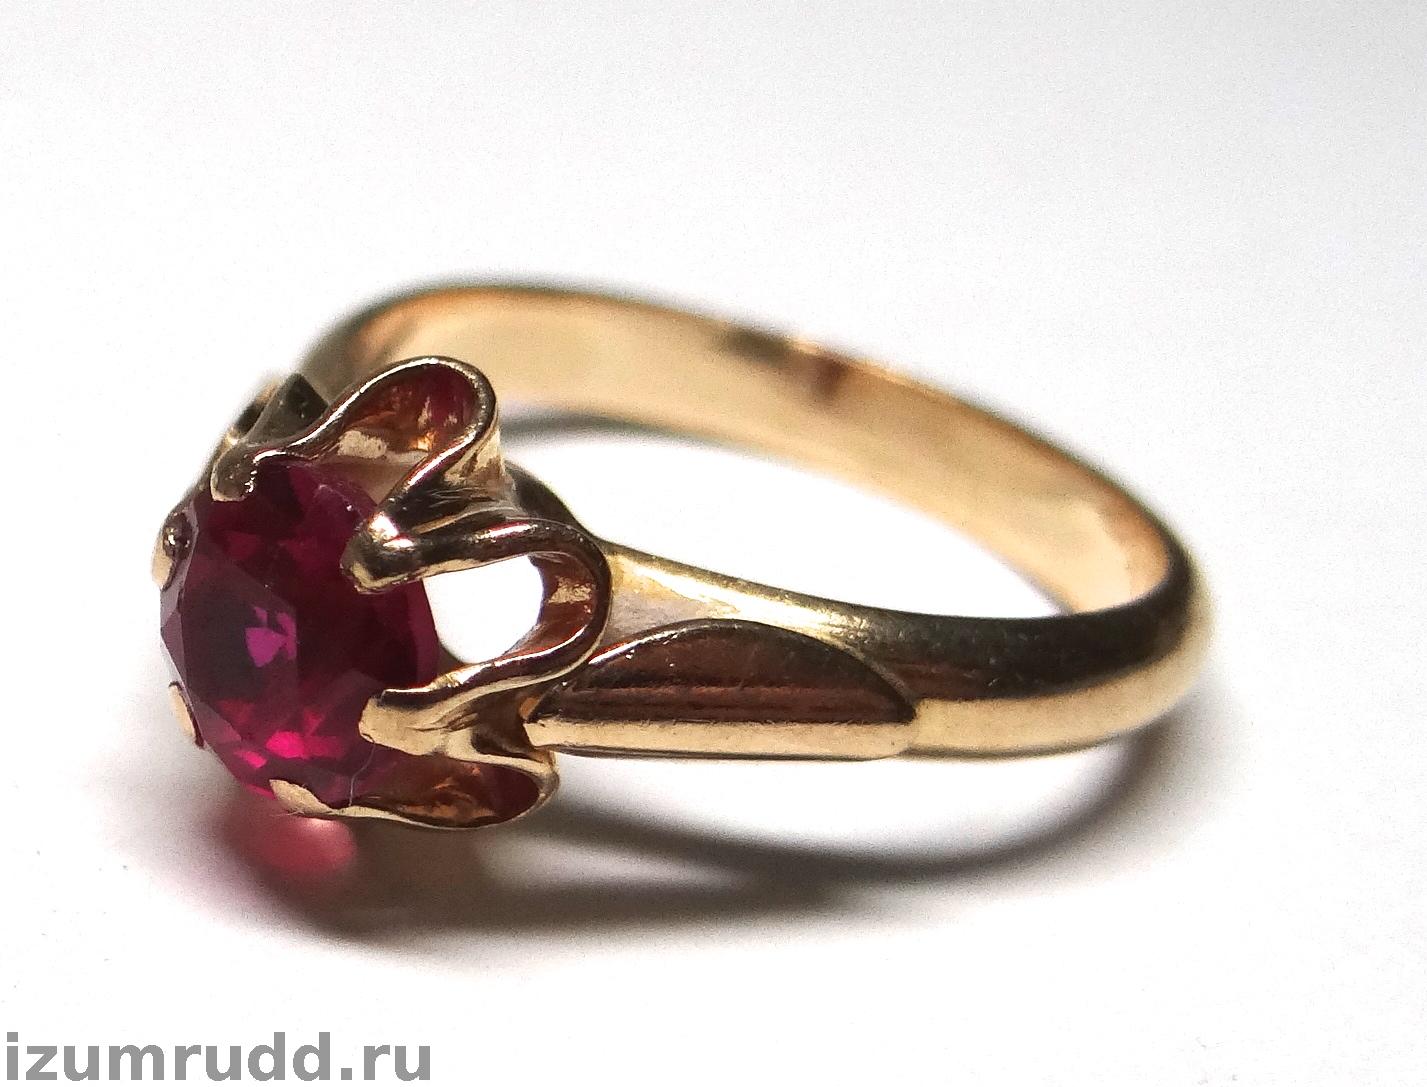 Советское золотое кольцо тюльпан 583 пробы, СССР.